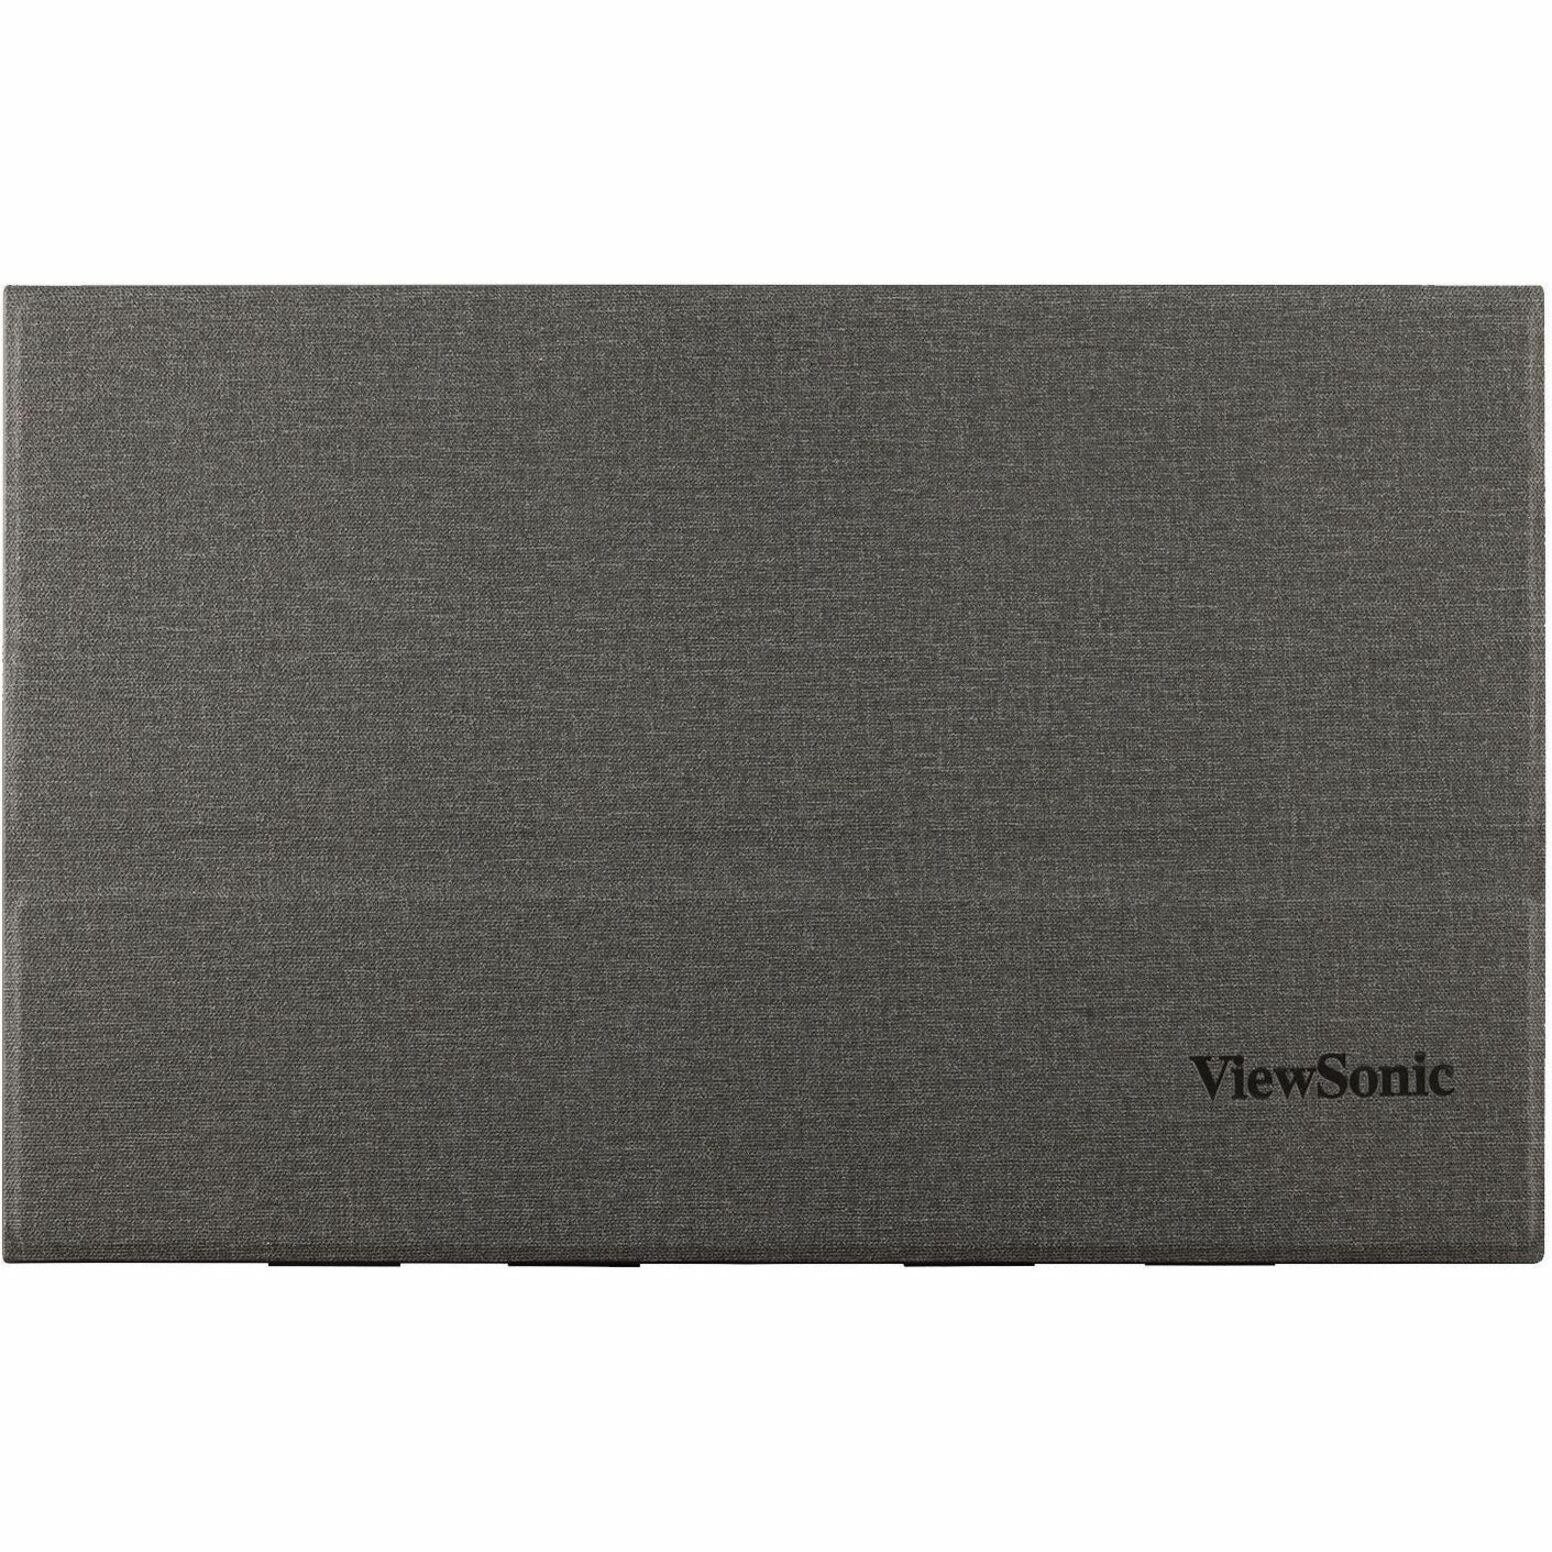 ViewSonic VX1655-4K Jeu LED Moniteur 15.6" 4K UHD Moniteur Portable avec 60W USB C et mini HDMI